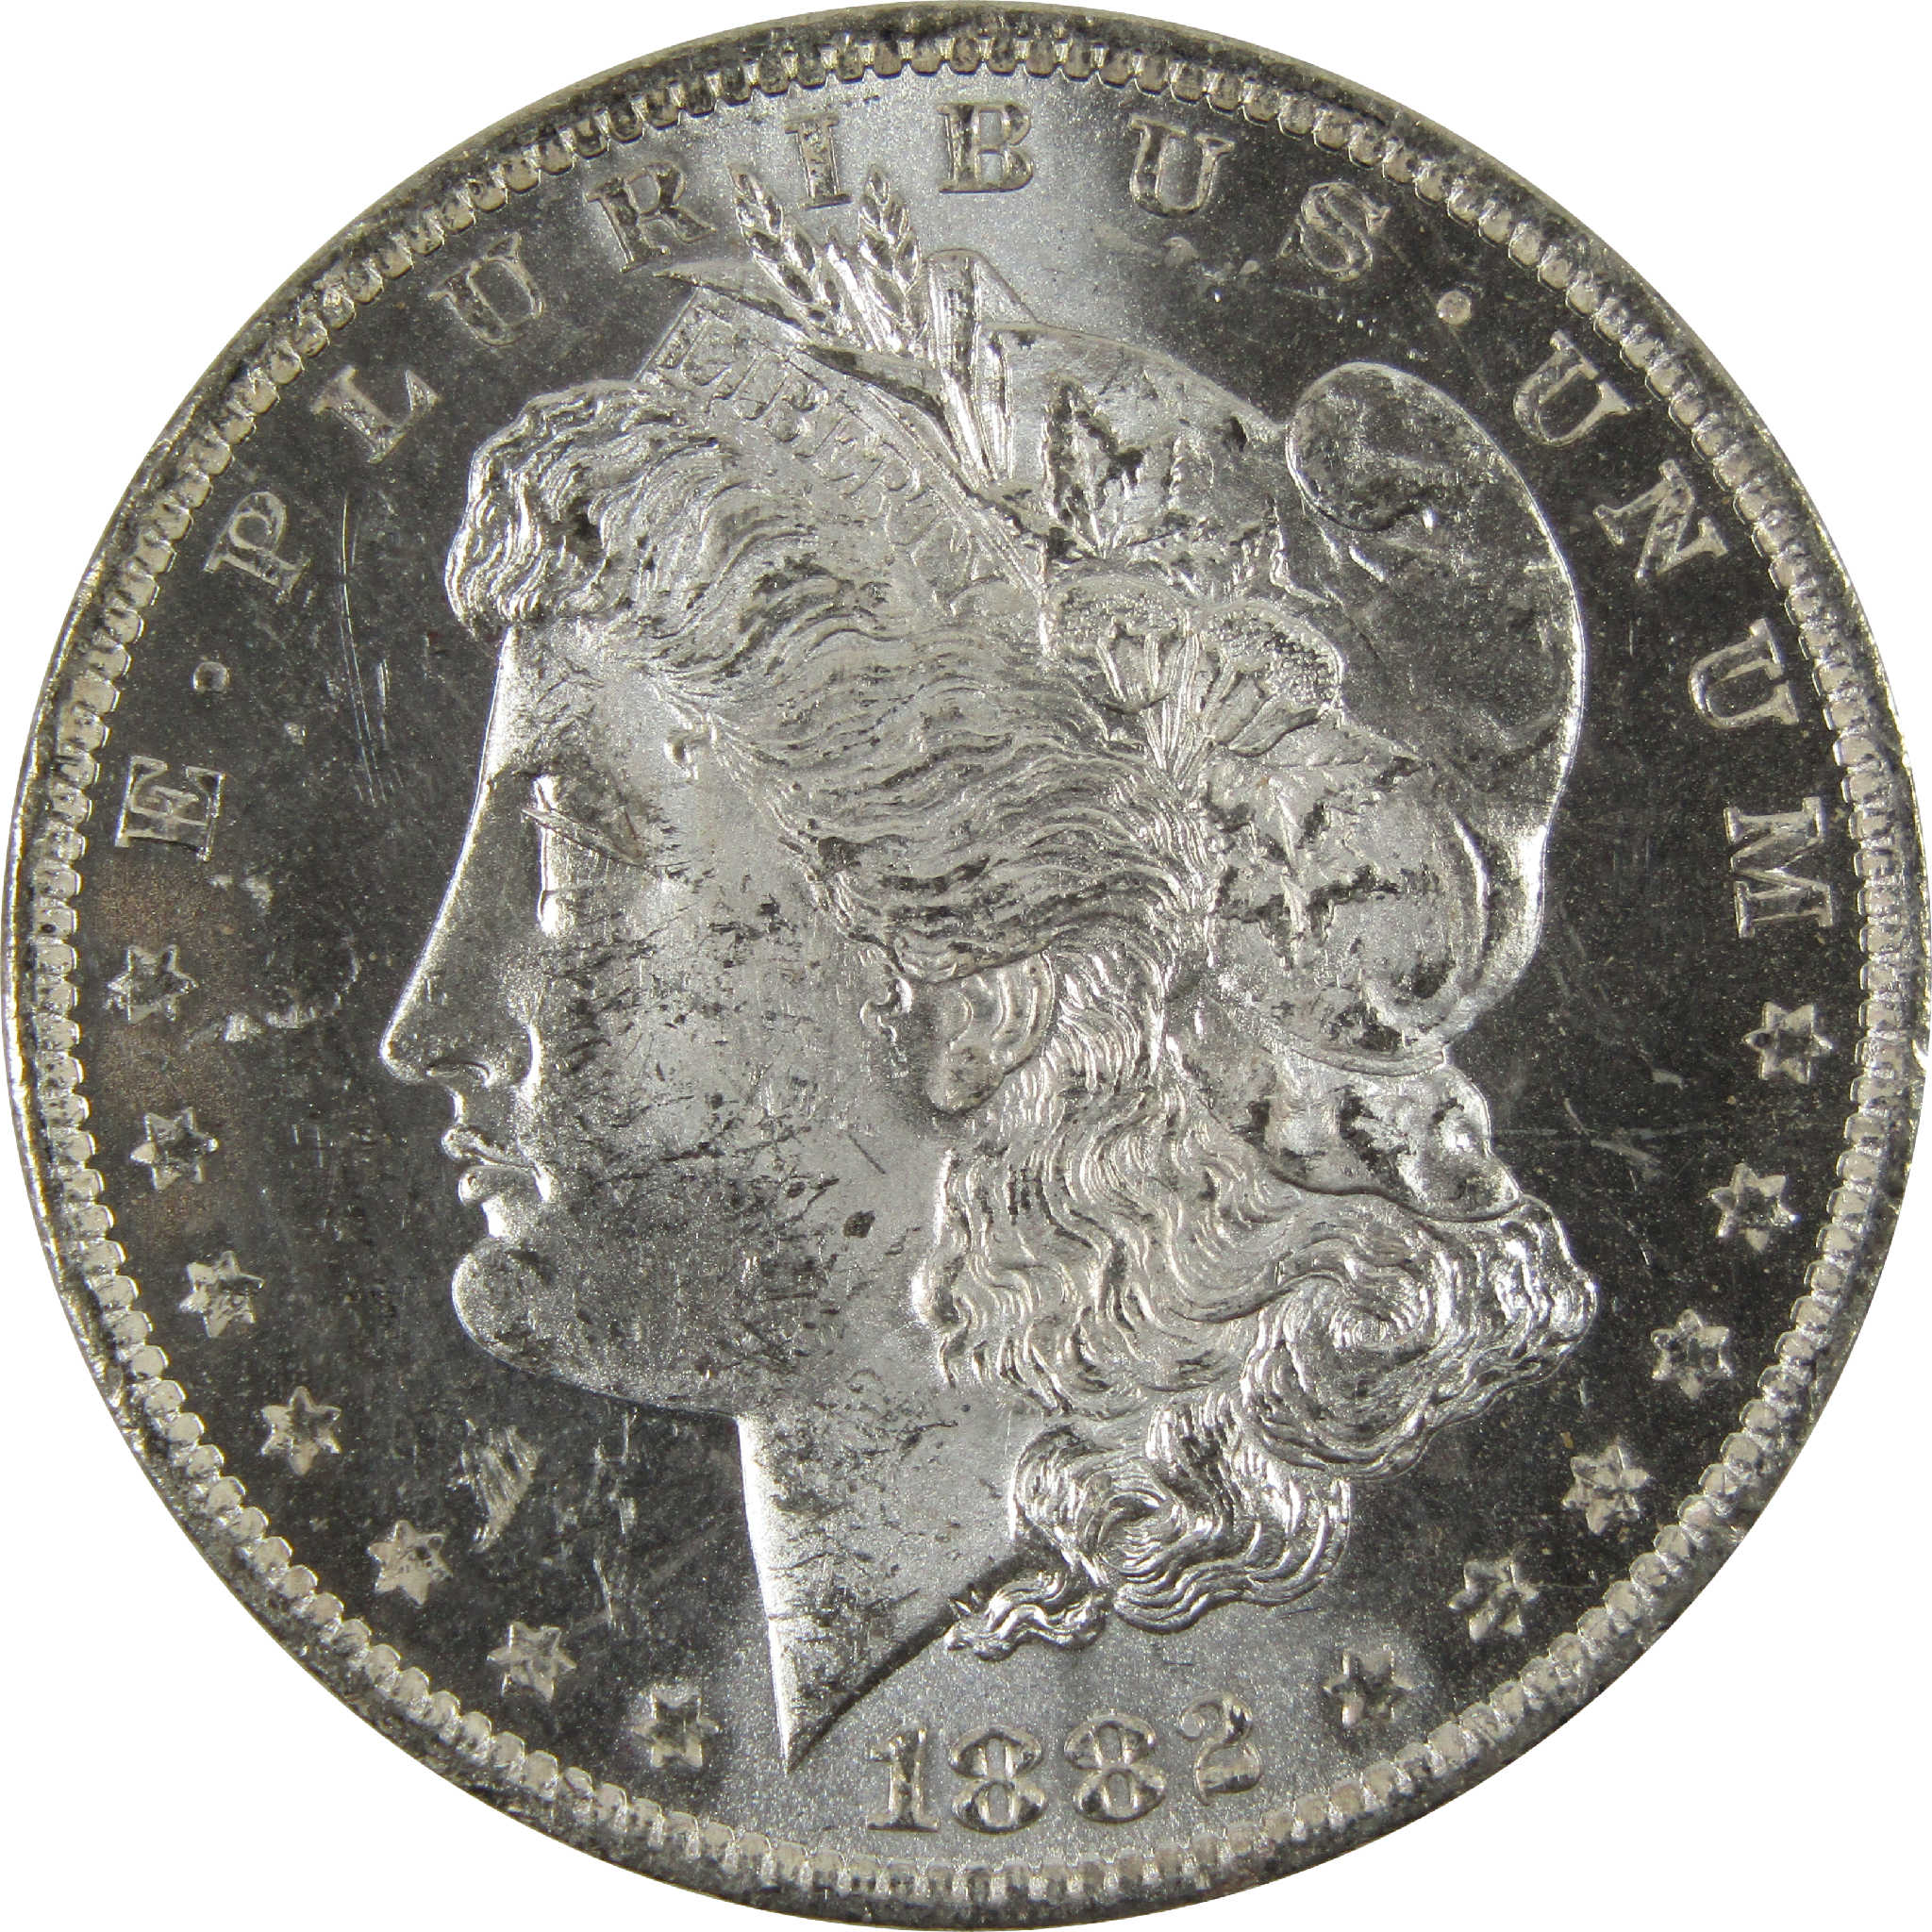 1882 O Morgan Dollar BU Uncirculated 90% Silver $1 Coin SKU:I8908 - Morgan coin - Morgan silver dollar - Morgan silver dollar for sale - Profile Coins &amp; Collectibles